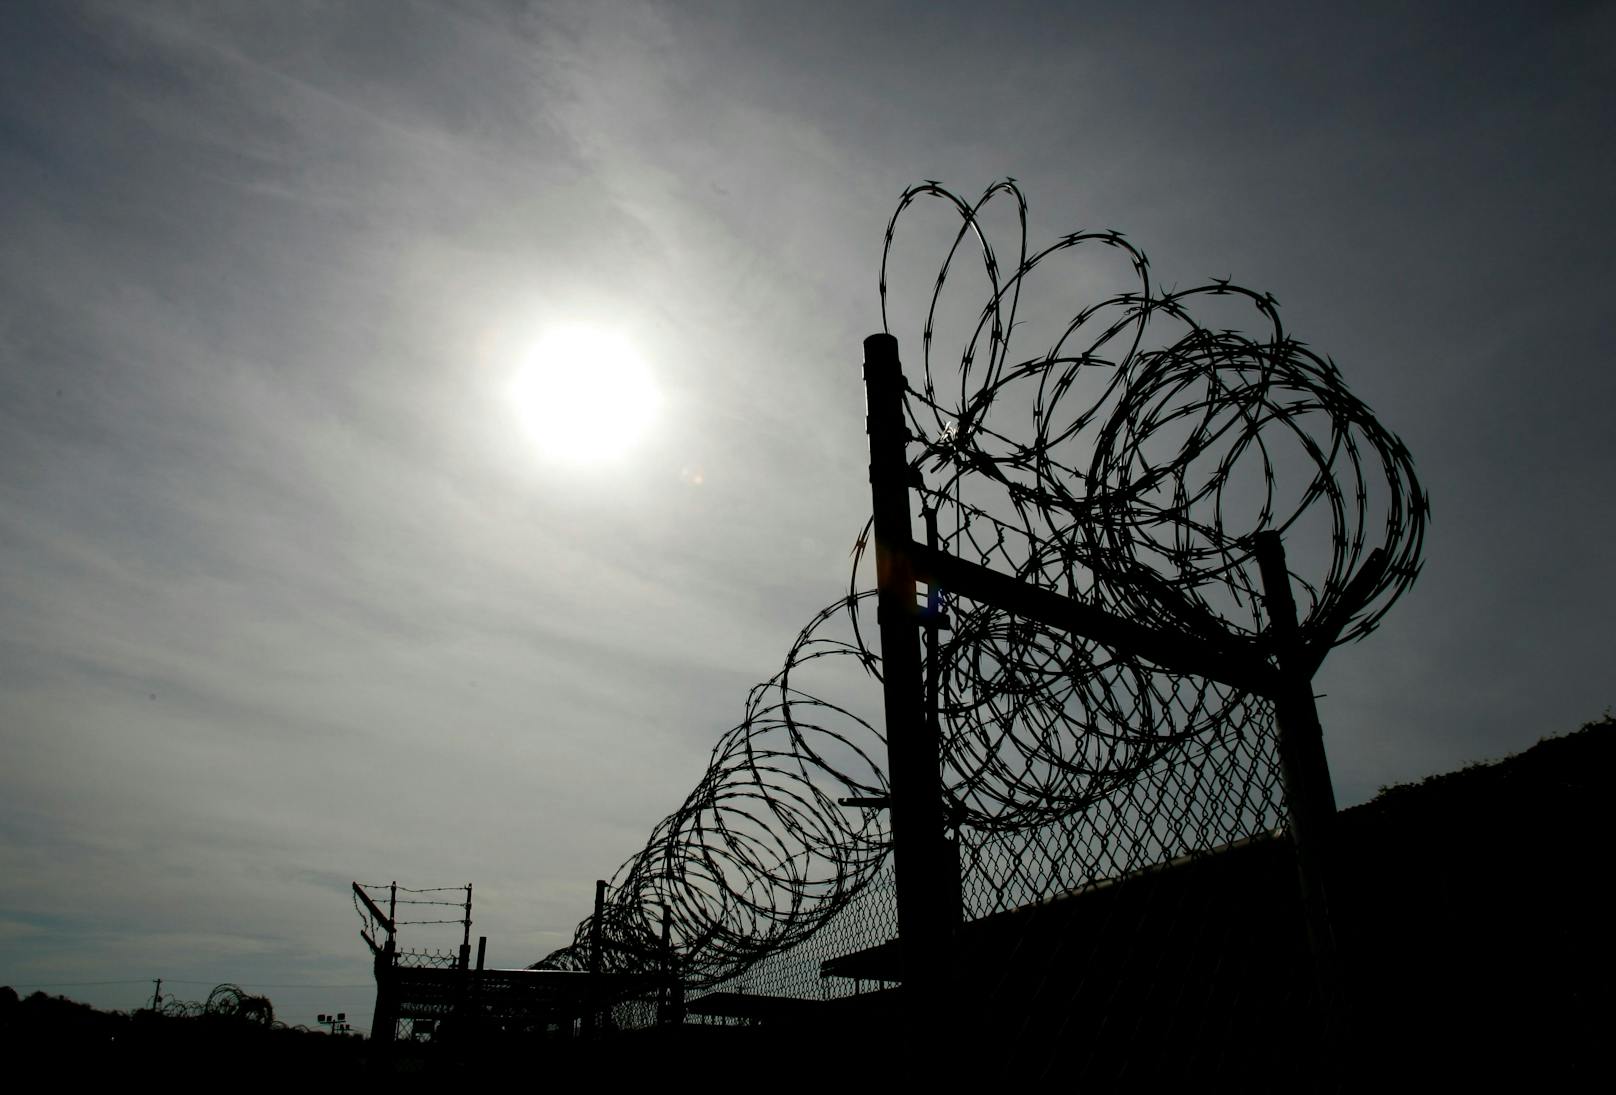 Im Lager des US-Marinestützpunkt in Guantánamo Bay (Kuba) waren zeitweise fast 800 Menschen inhaftiert.